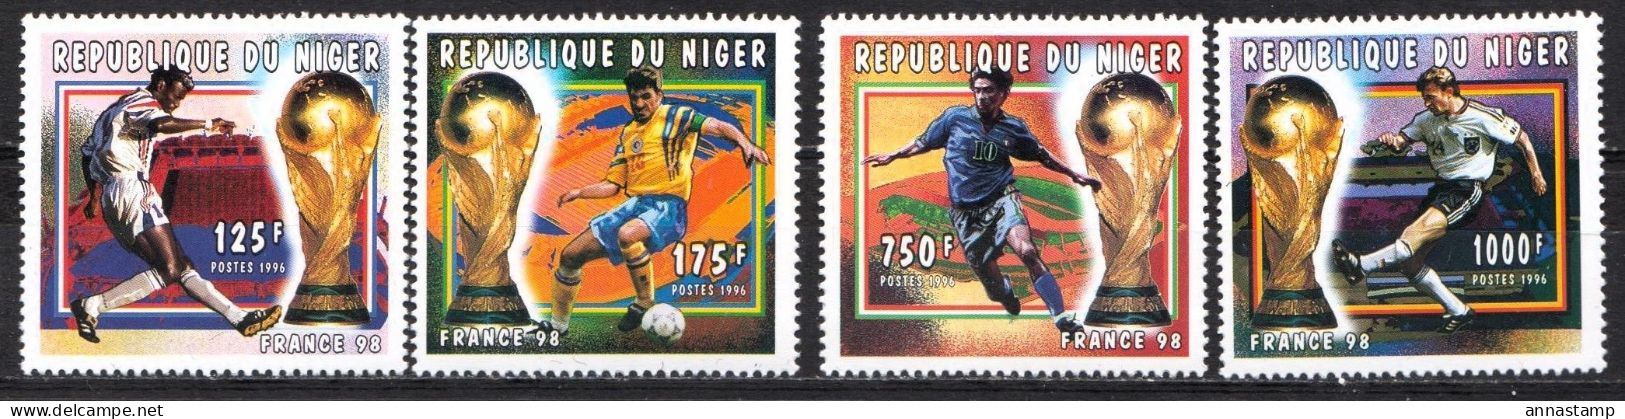 Niger MNH Set - 1998 – France